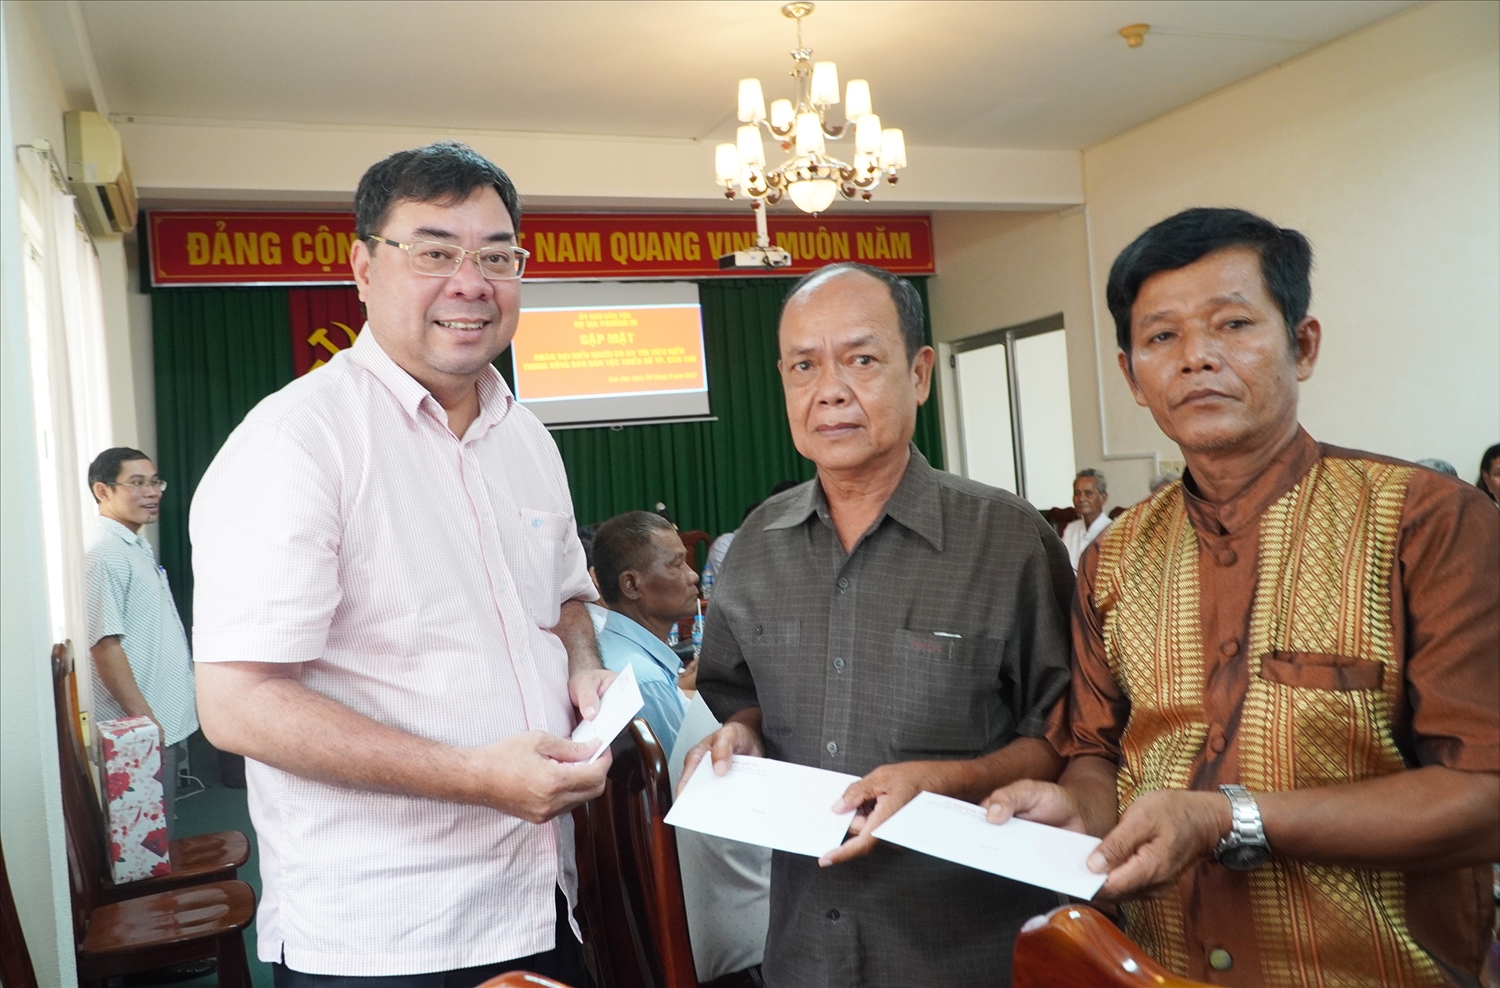 Ông Tào Việt Thắng - Vụ Phó phụ trách Vụ Địa phương III trao quà cho từng Người có uy tín của Đoàn